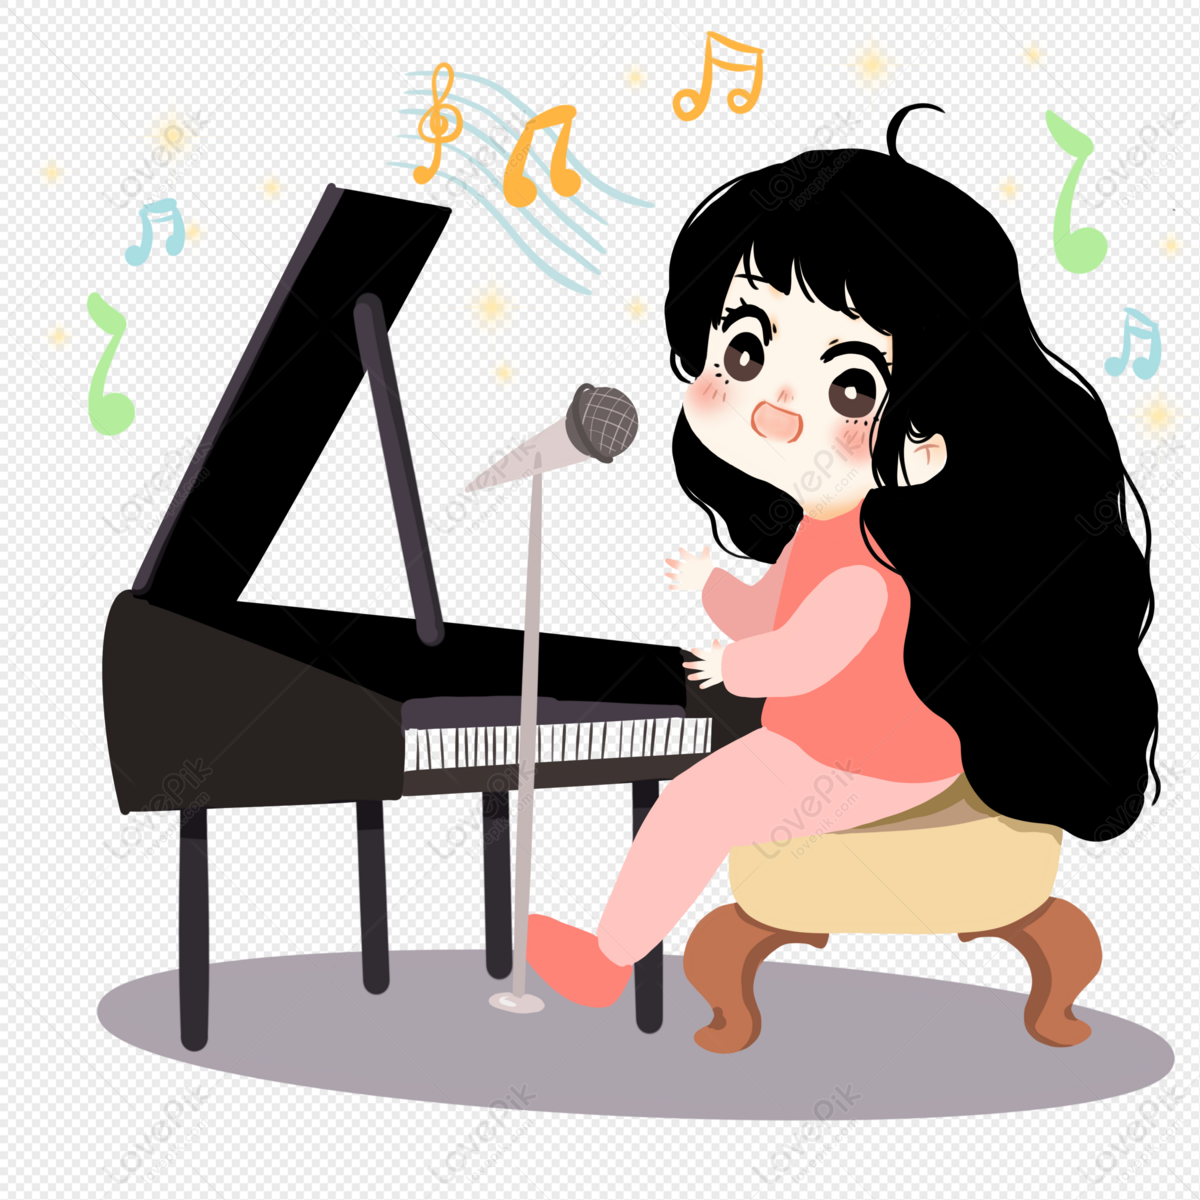 Фортепиано мультяшная. Девочка играет на фортепиано рисунок. Иллюстрация с пианино девочка. Девочка играет на пианино мультяшки. Игра поющая девочка